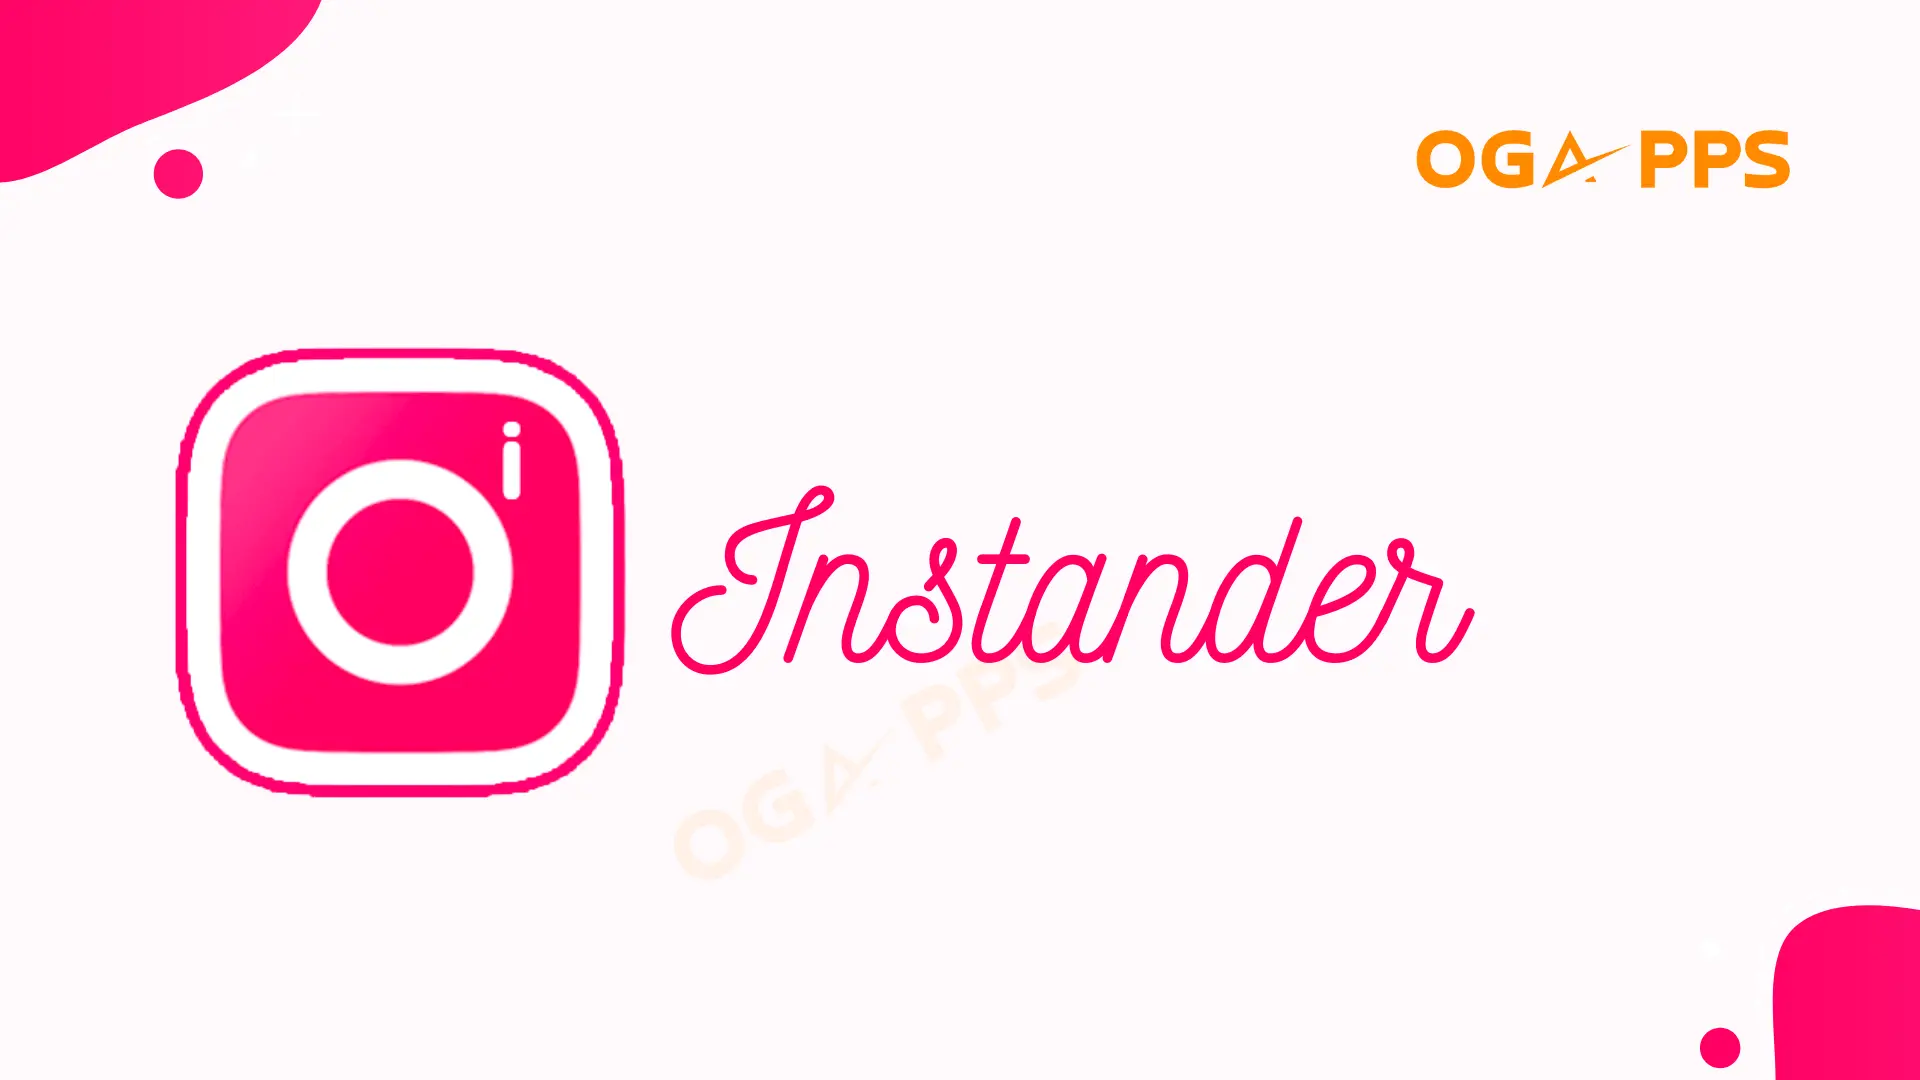 Instander App download